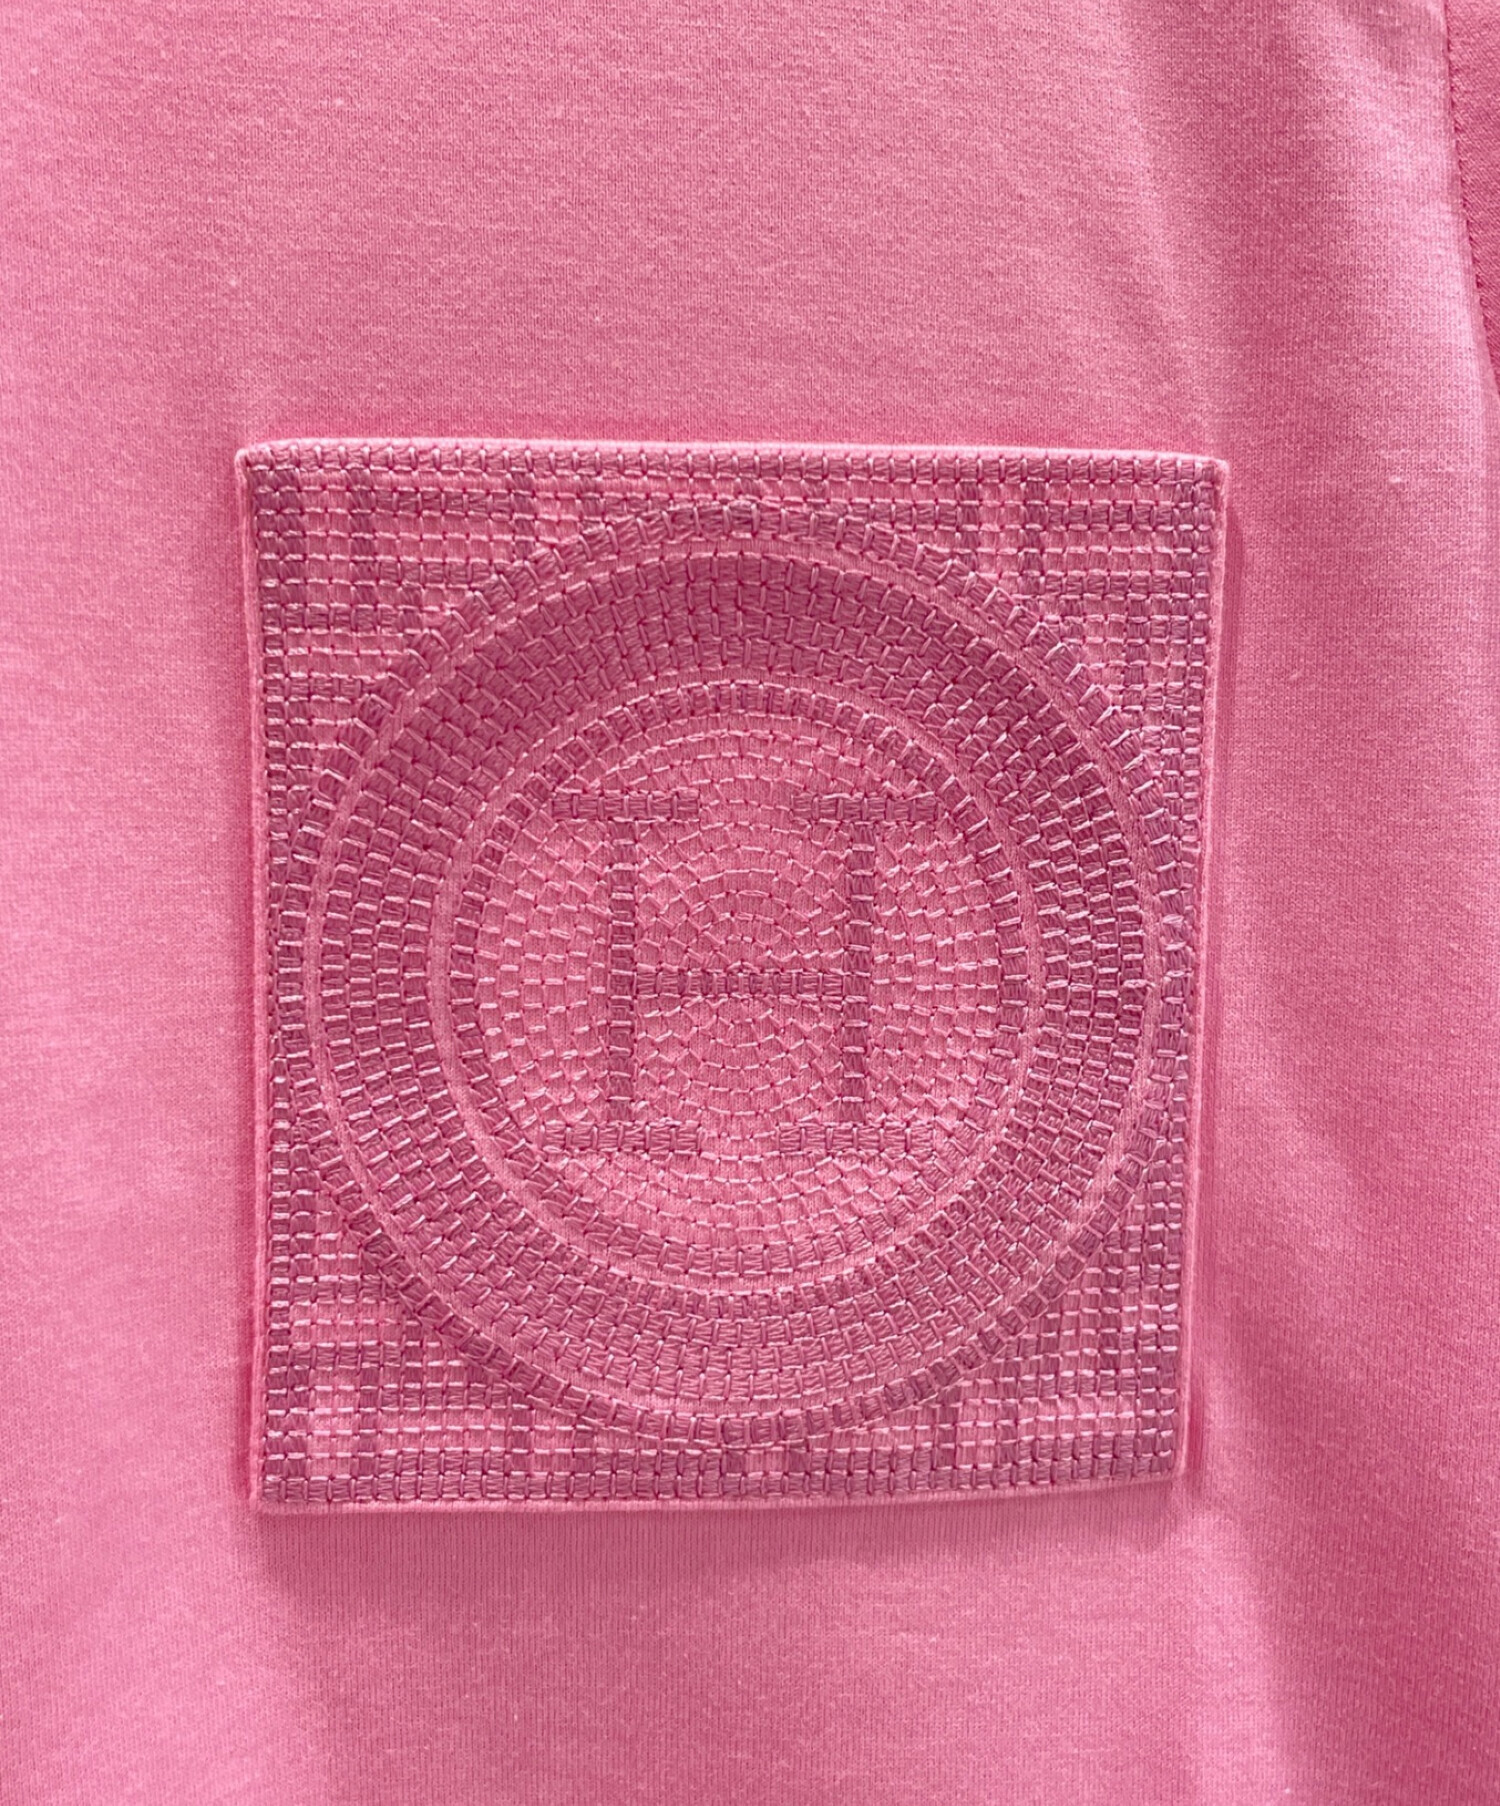 HERMES (エルメス) H刺繍入りポケット半袖Ｔシャツ ピンク サイズ:38